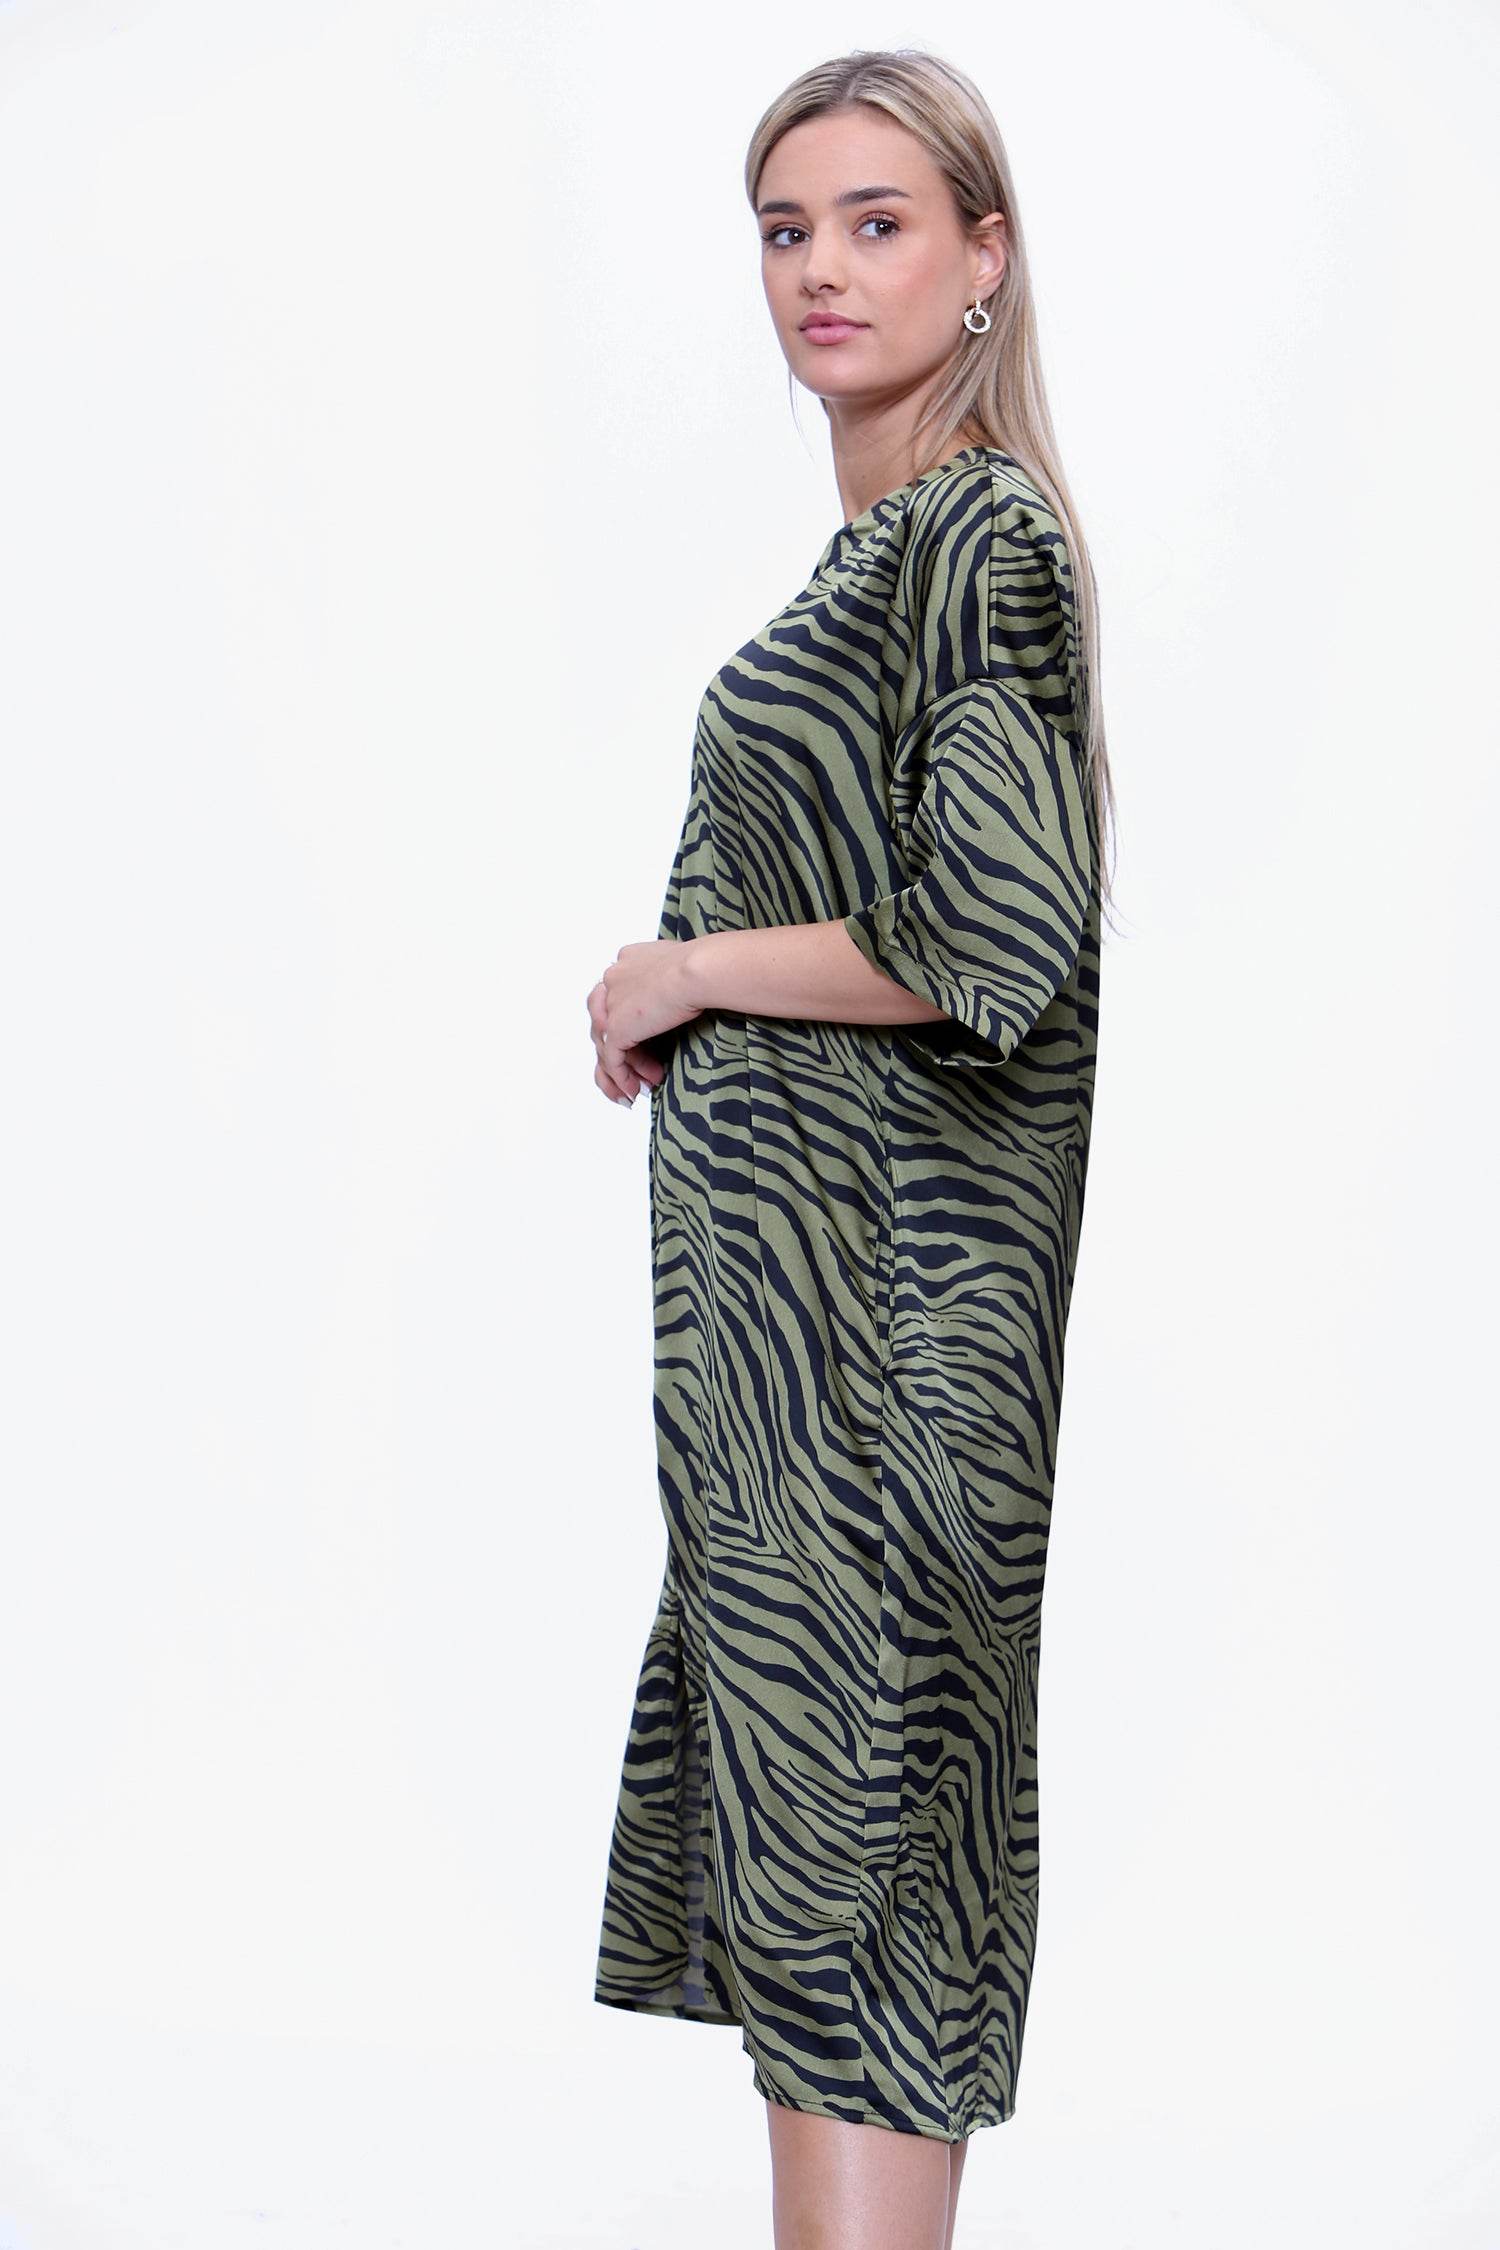 Love Sunshine Khaki Zebra Printed Oversized Shift Dress LS-2252